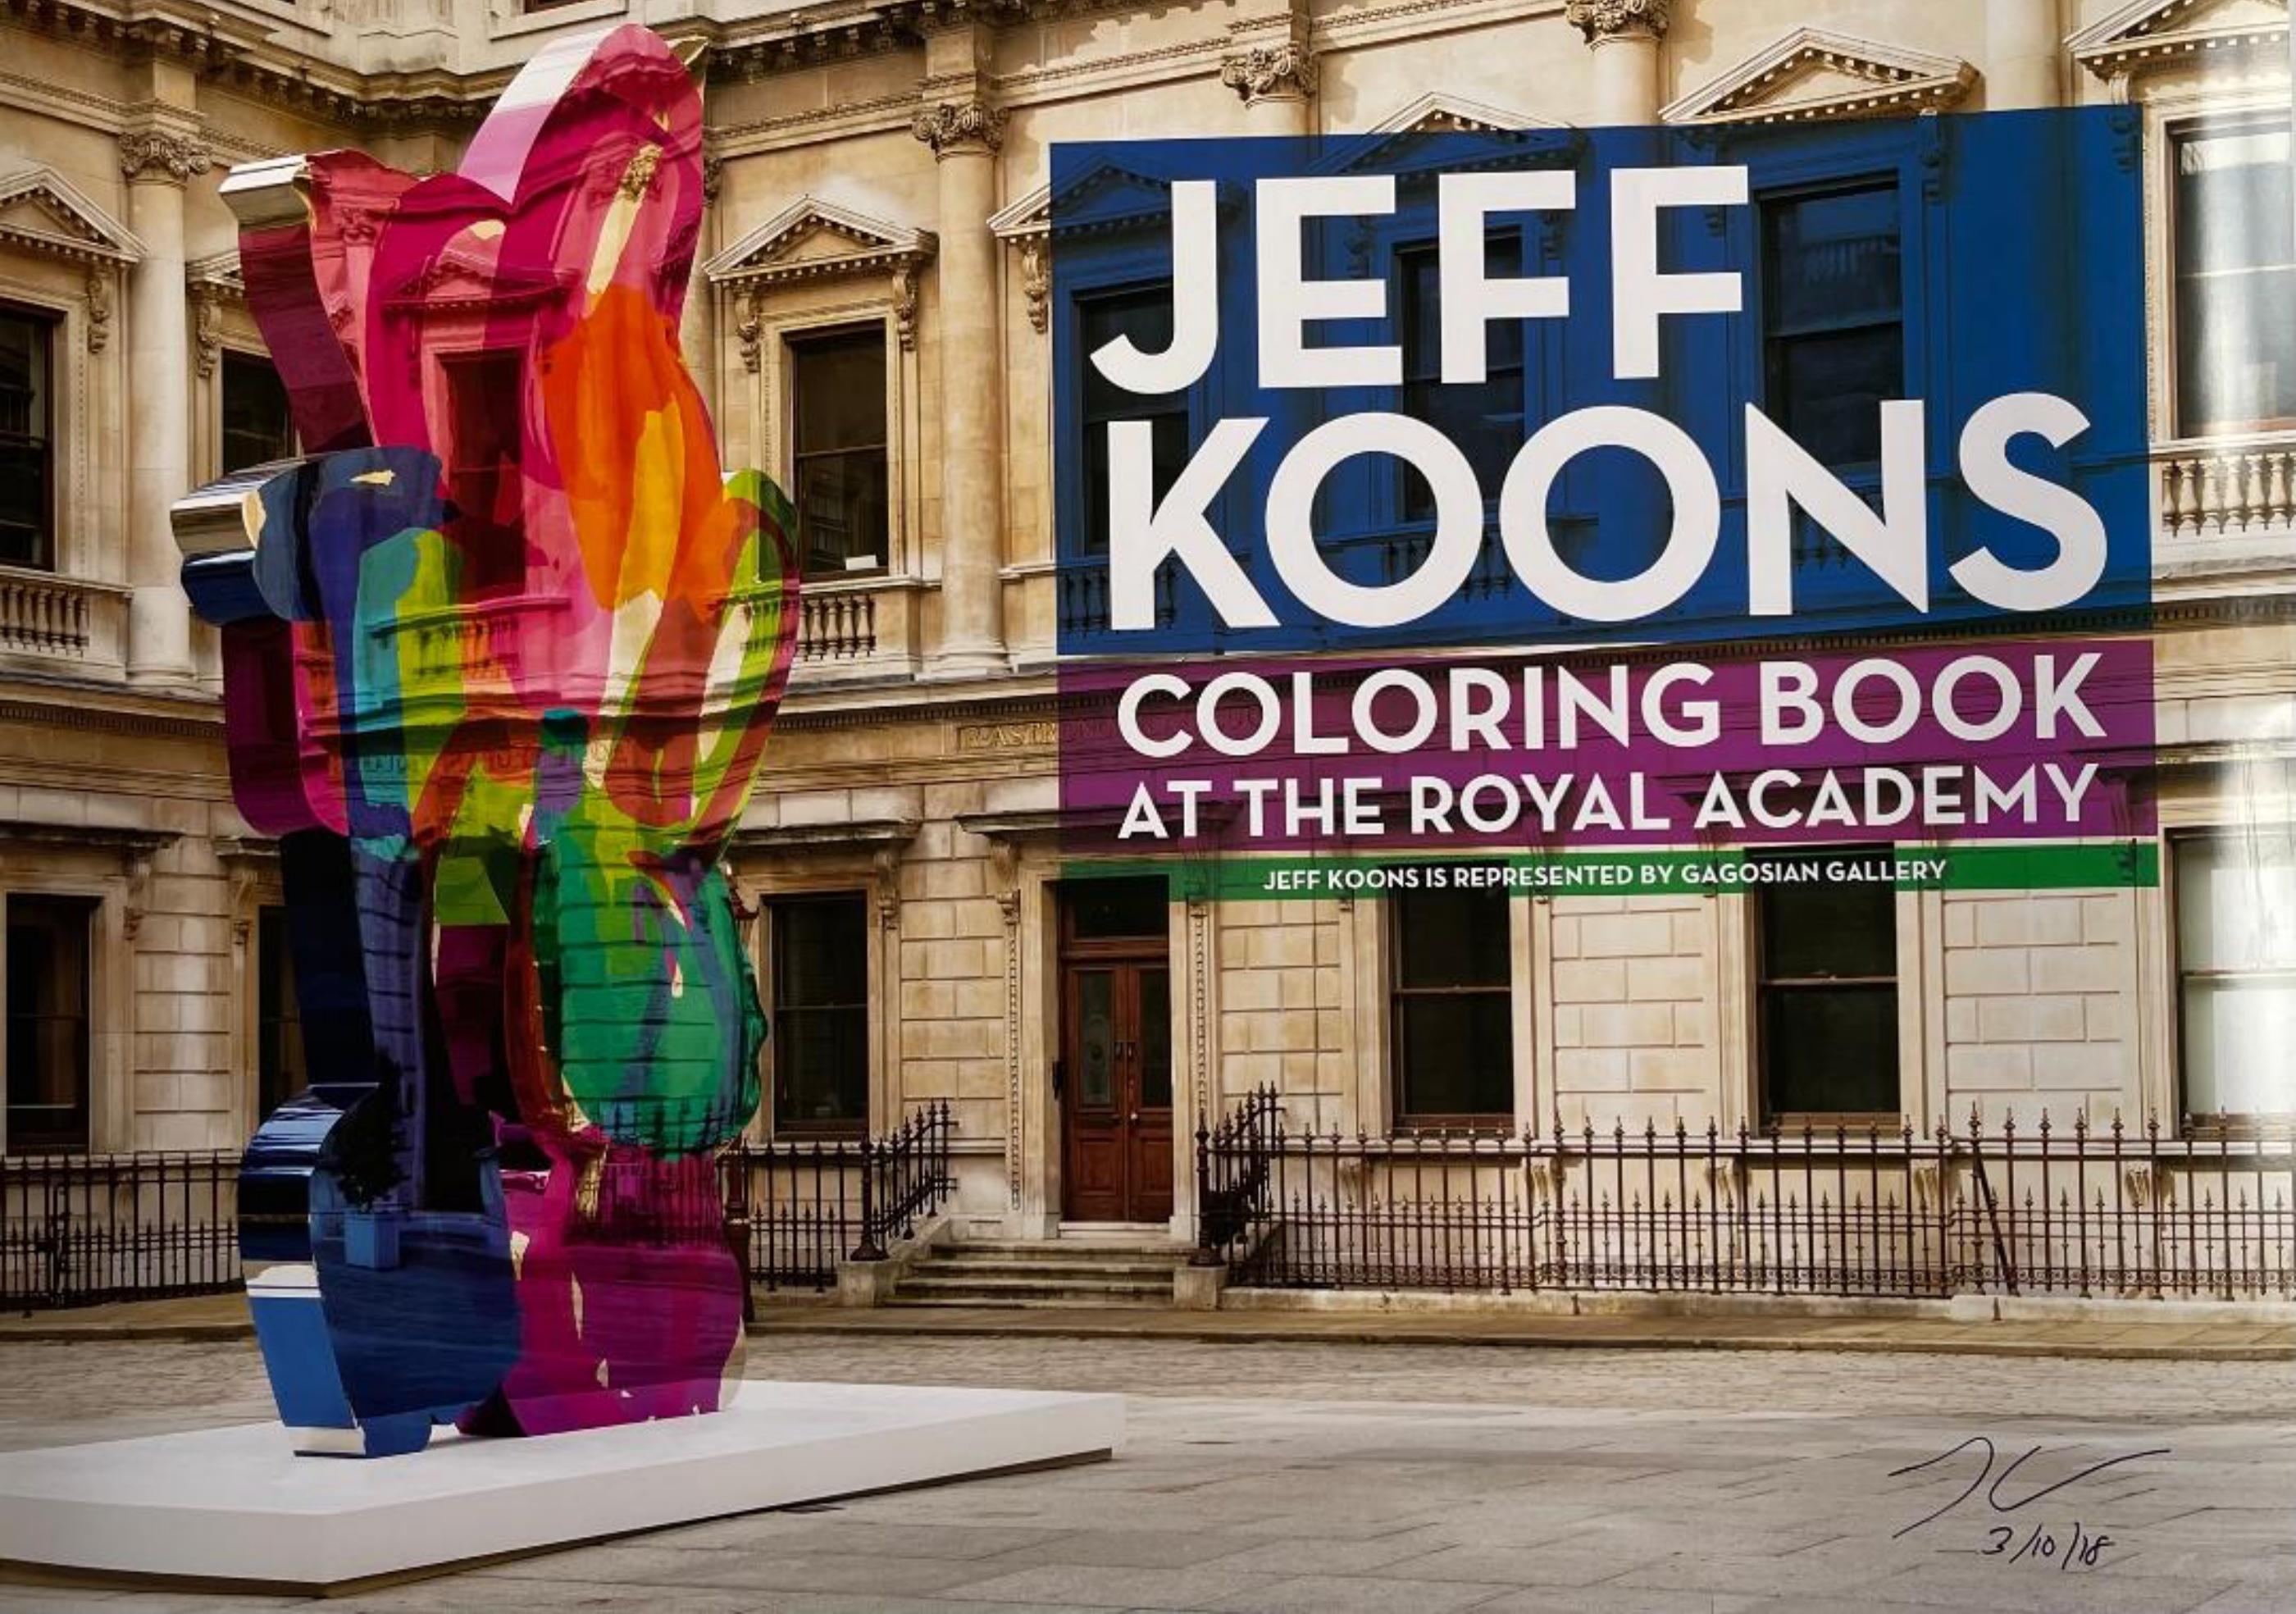 Wunderschöner Plakatdruck der Royal Academy of Arts (Handsigniert und datiert von Jeff Koons)